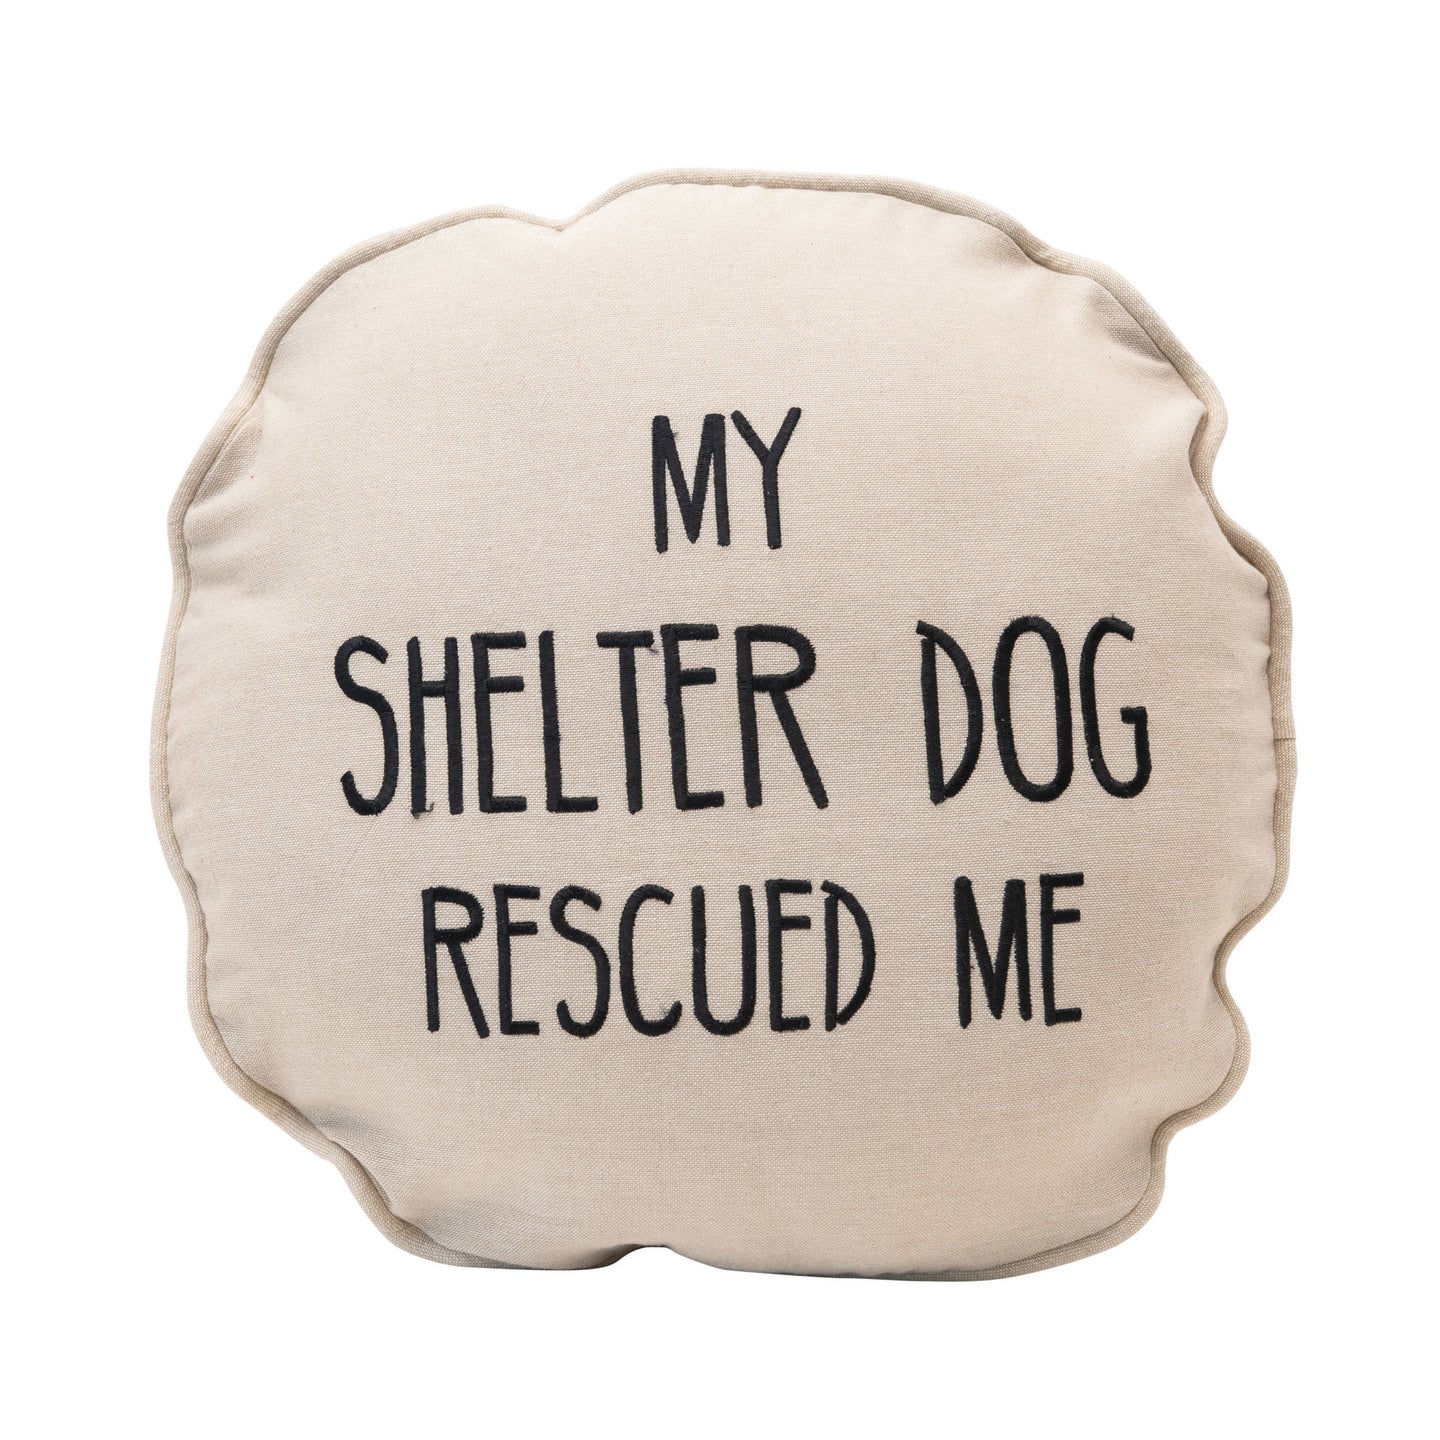 Shelter Dog Pillow